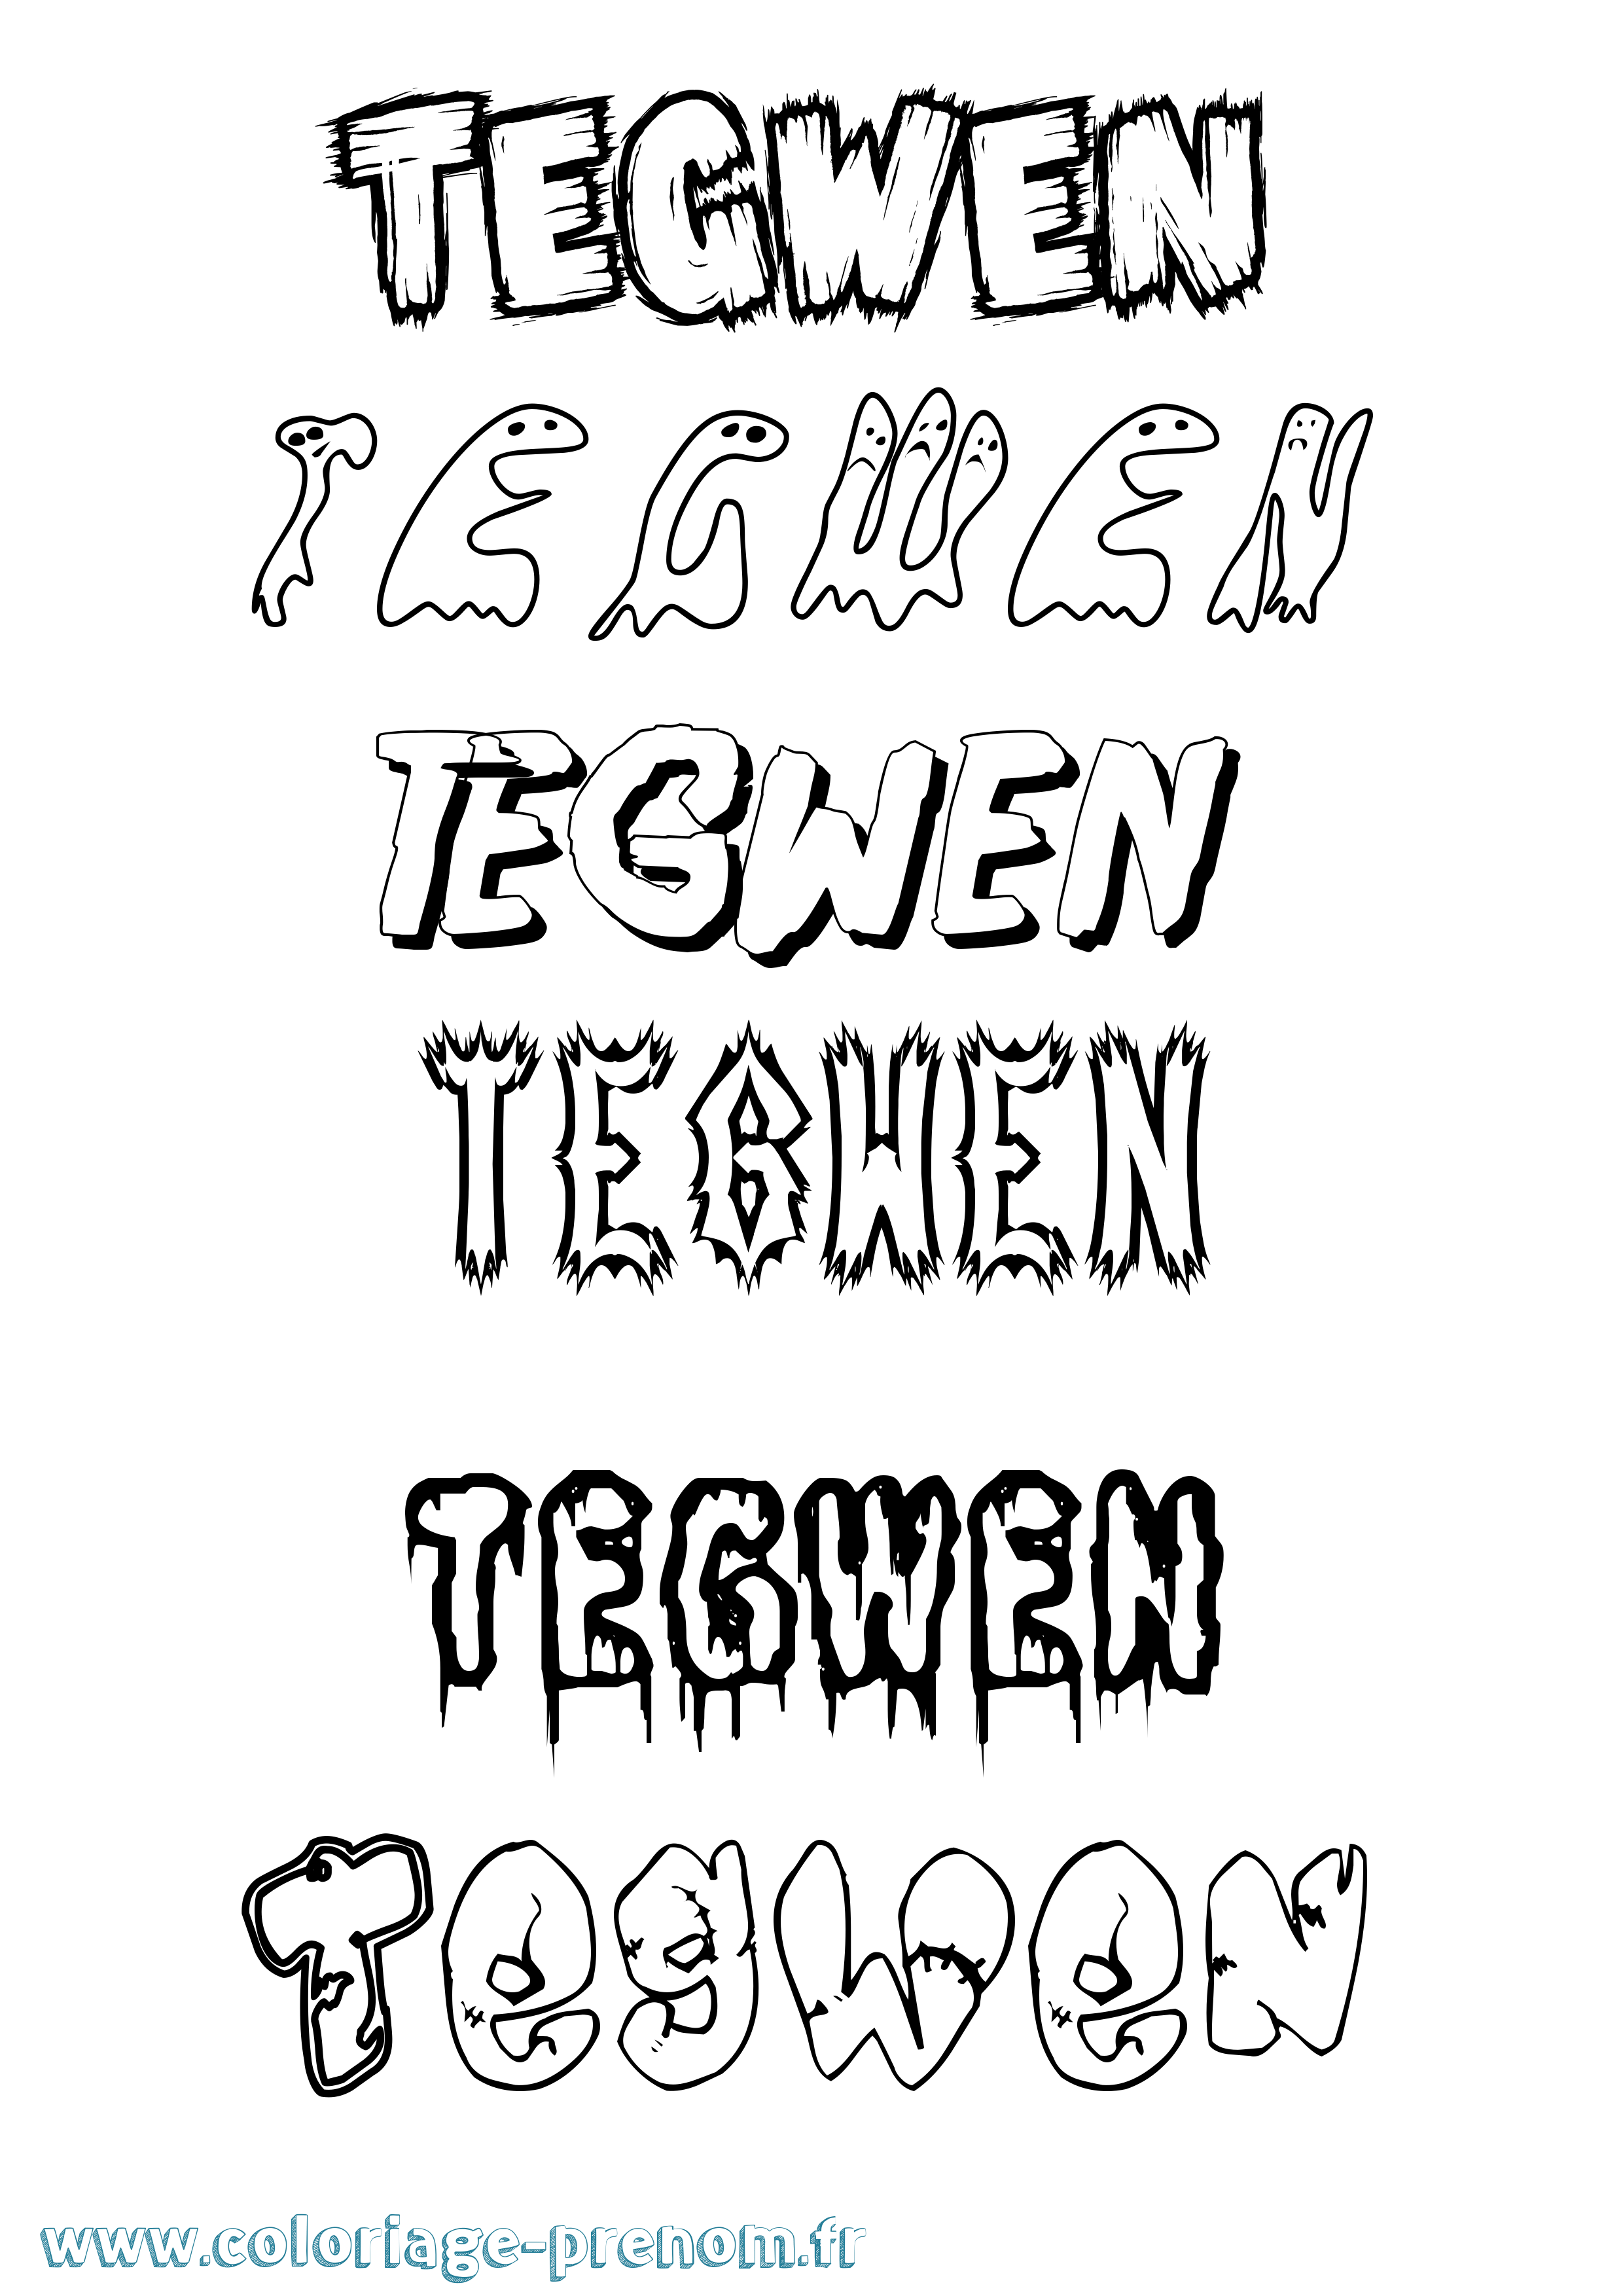 Coloriage prénom Tegwen Frisson